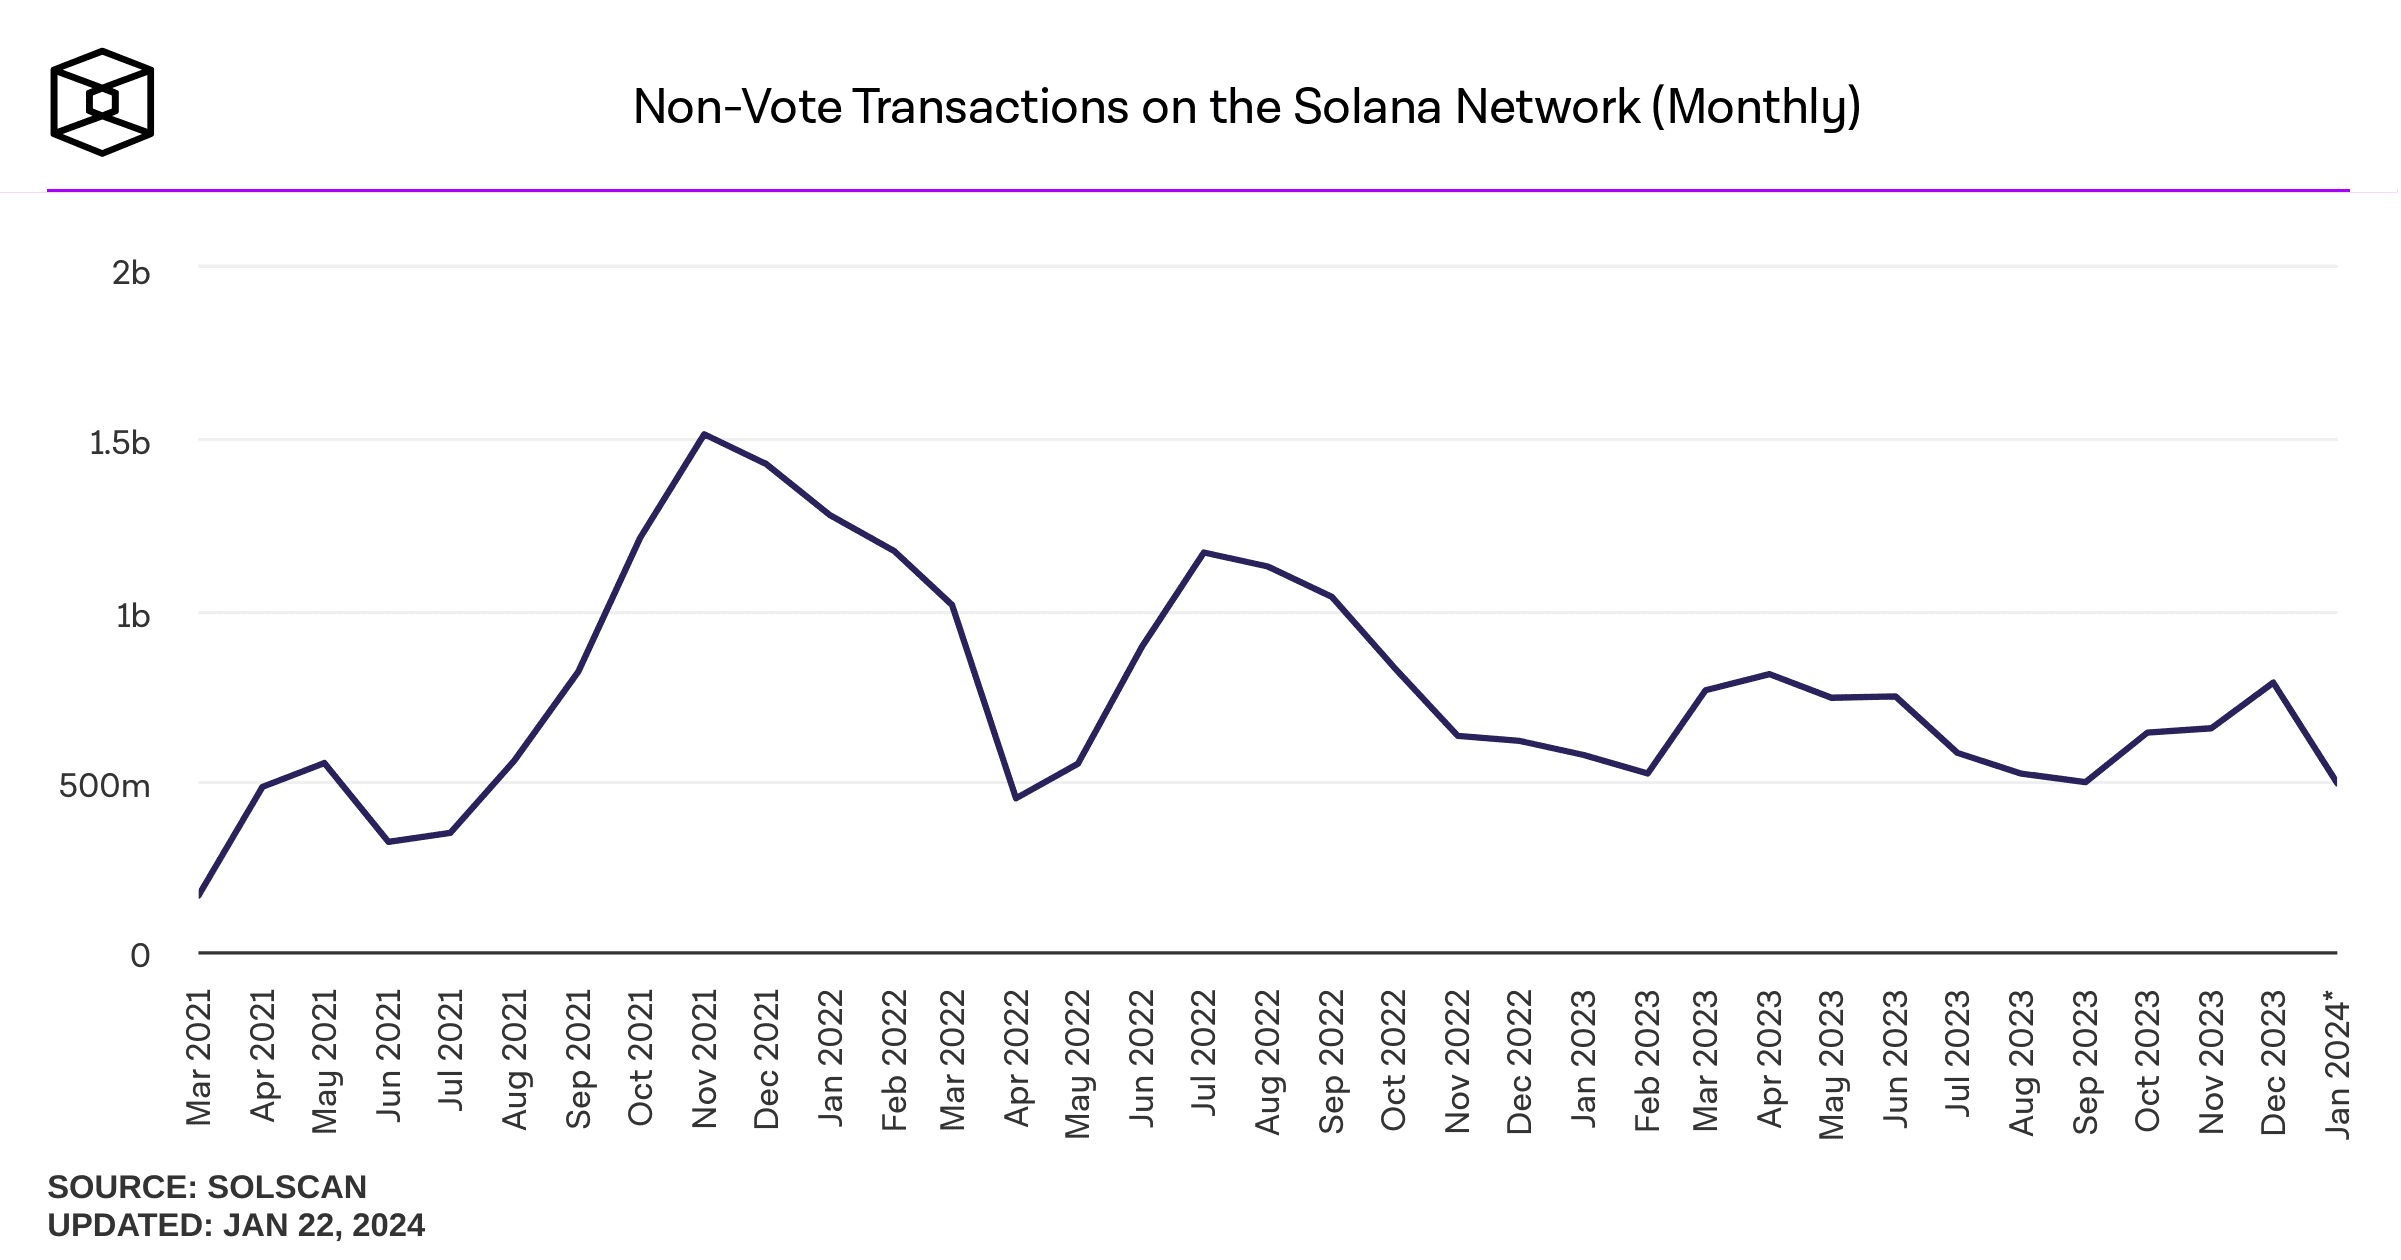 Las transacciones no relacionadas con votos en la red Solana están en camino de experimentar una notable disminución en enero.